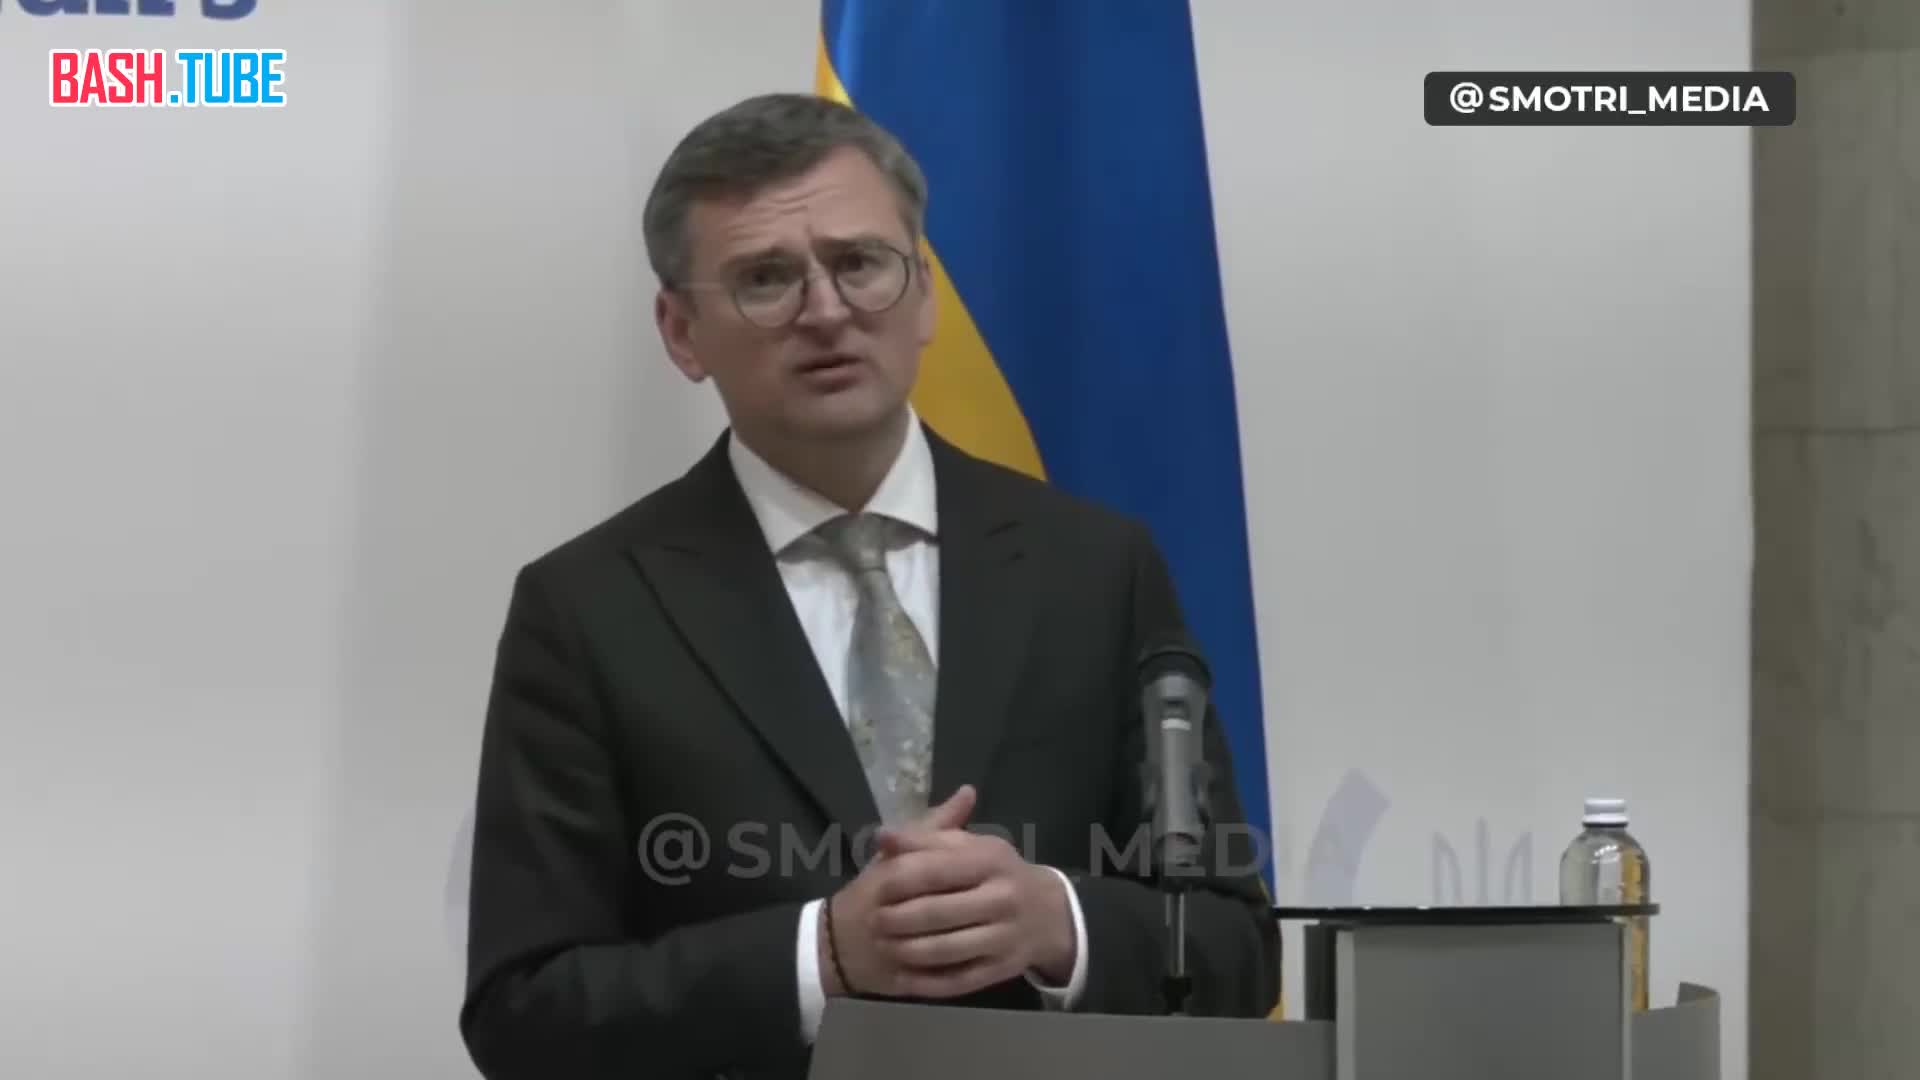  Глава МИД Украины Кулеба: «Нам срочно нужно 7 батарей Patriot, из них 2 батареи нужны уже вчера для защиты Харьковщины»